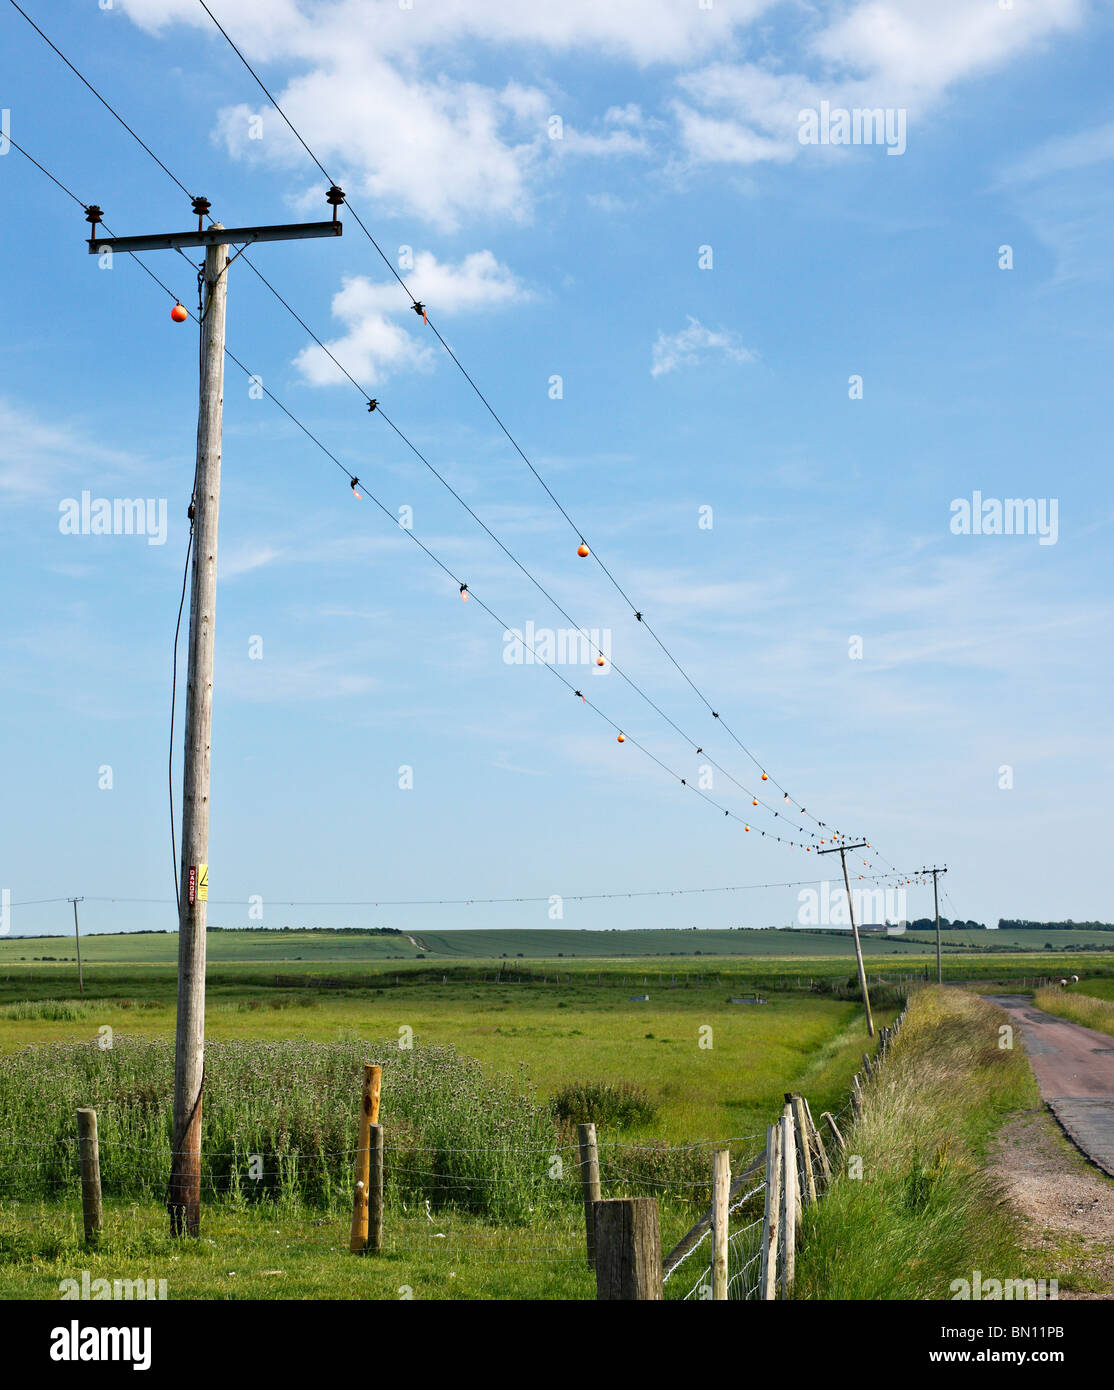 Los cables eléctricos con desviadores de vuelo de aves, para evitar que las aves migratorias ser electrocutado. Foto de stock